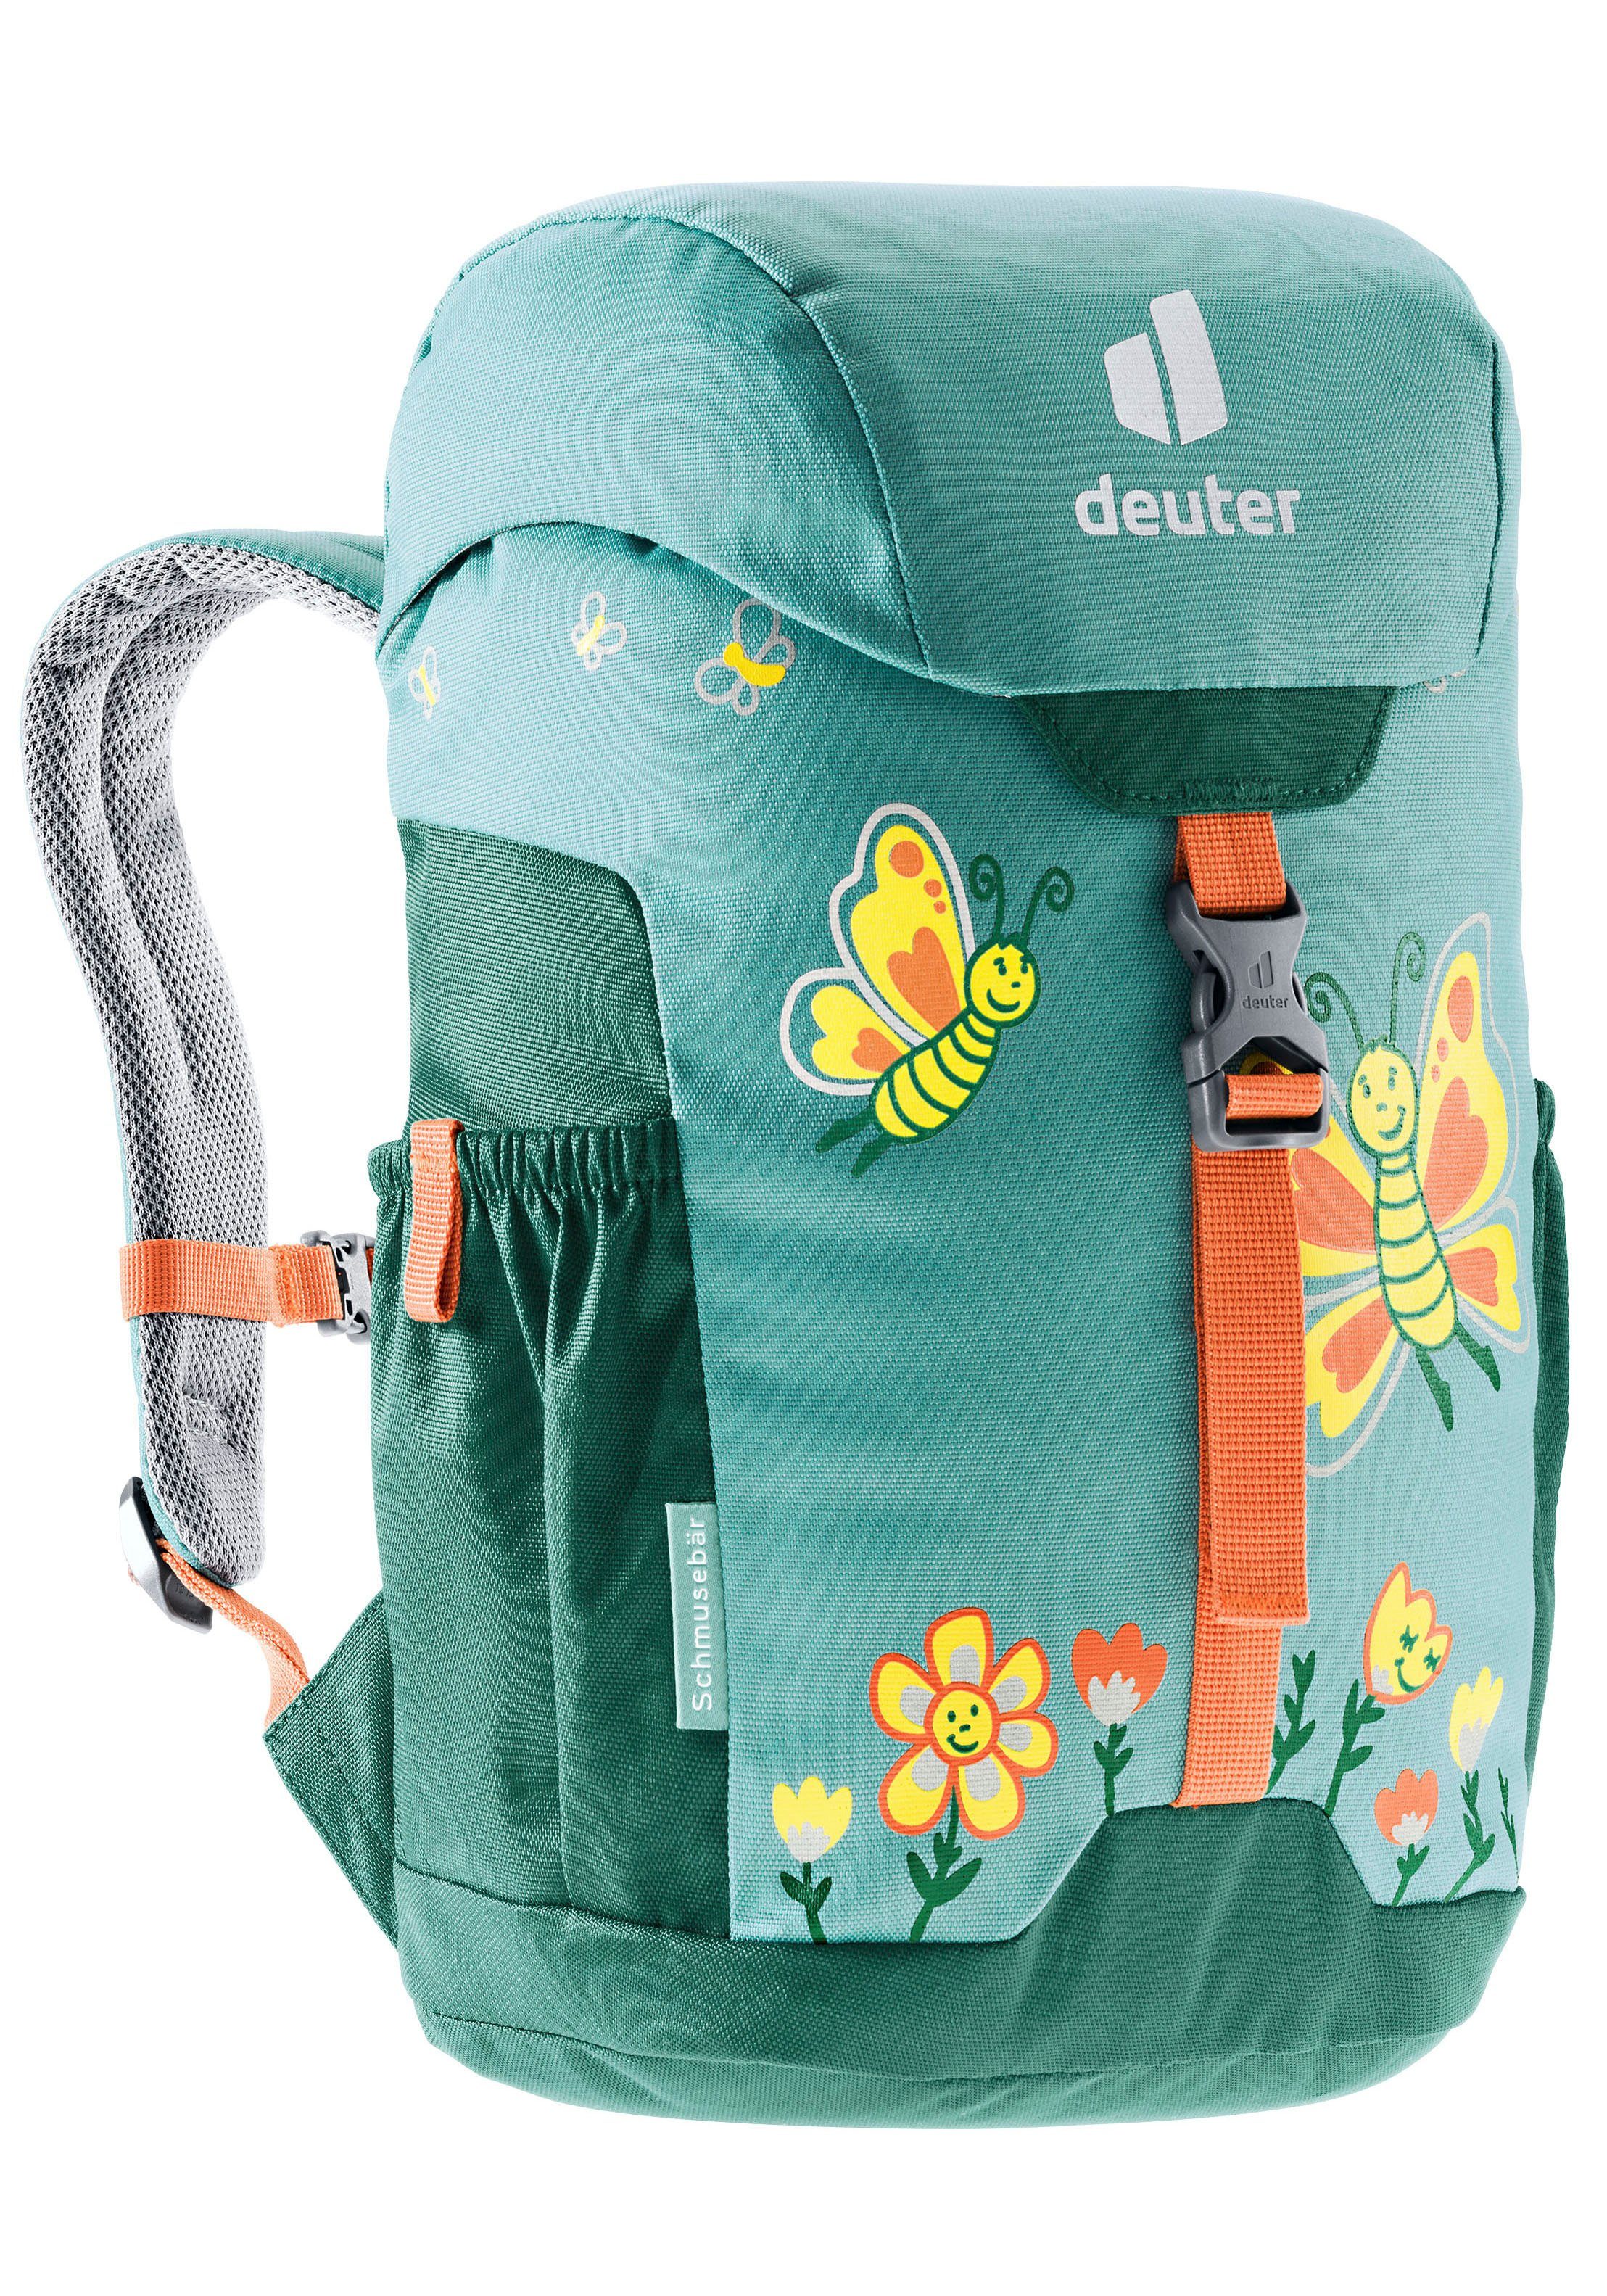 dustblue-alpinegreen Kinderrucksack deuter Schmusebär